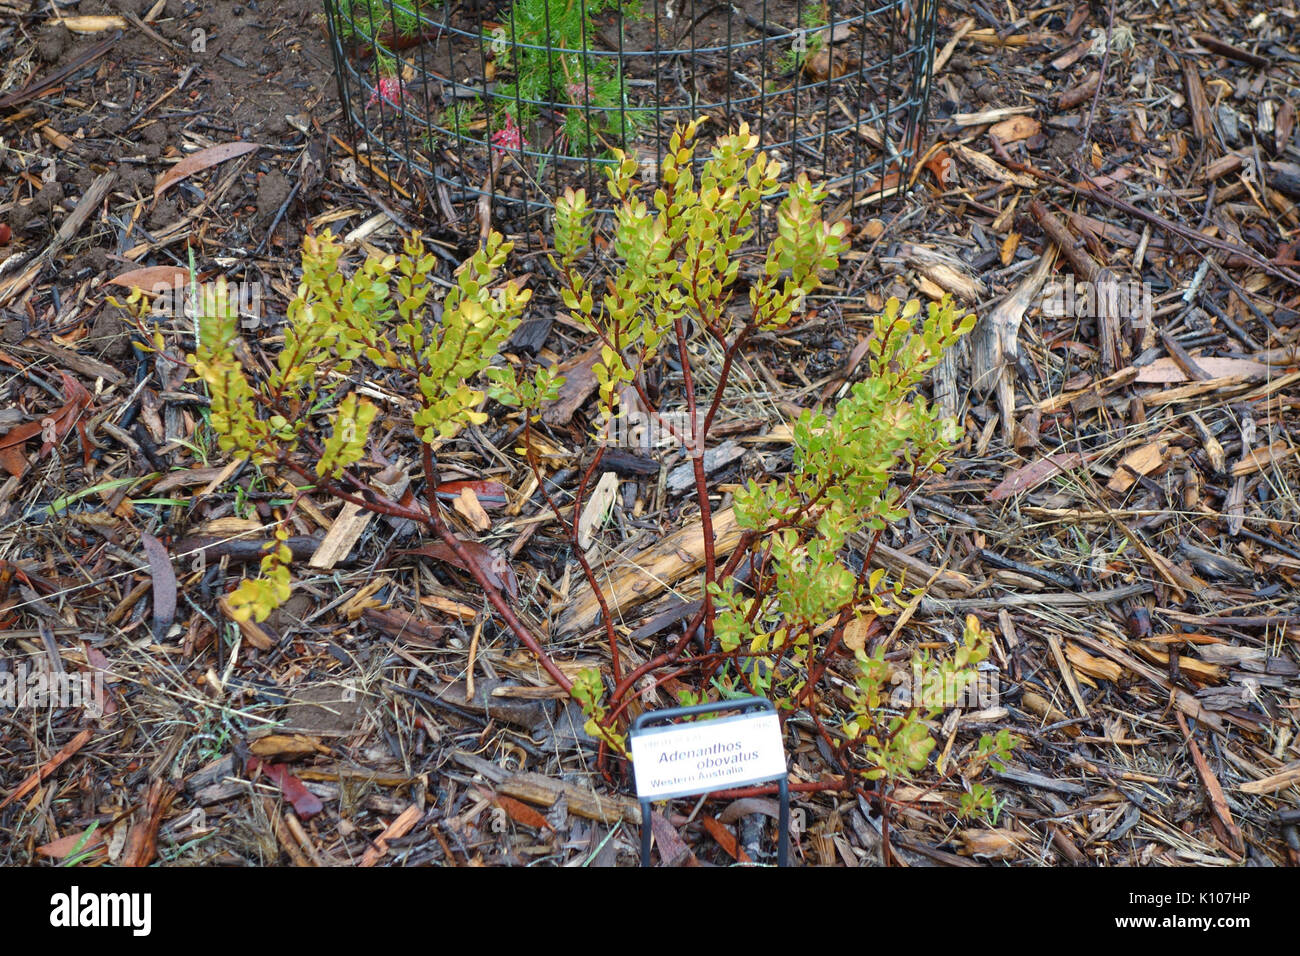 Adenanthos obovatus   UC Santa Cruz Arboretum   DSC07389 Stock Photo